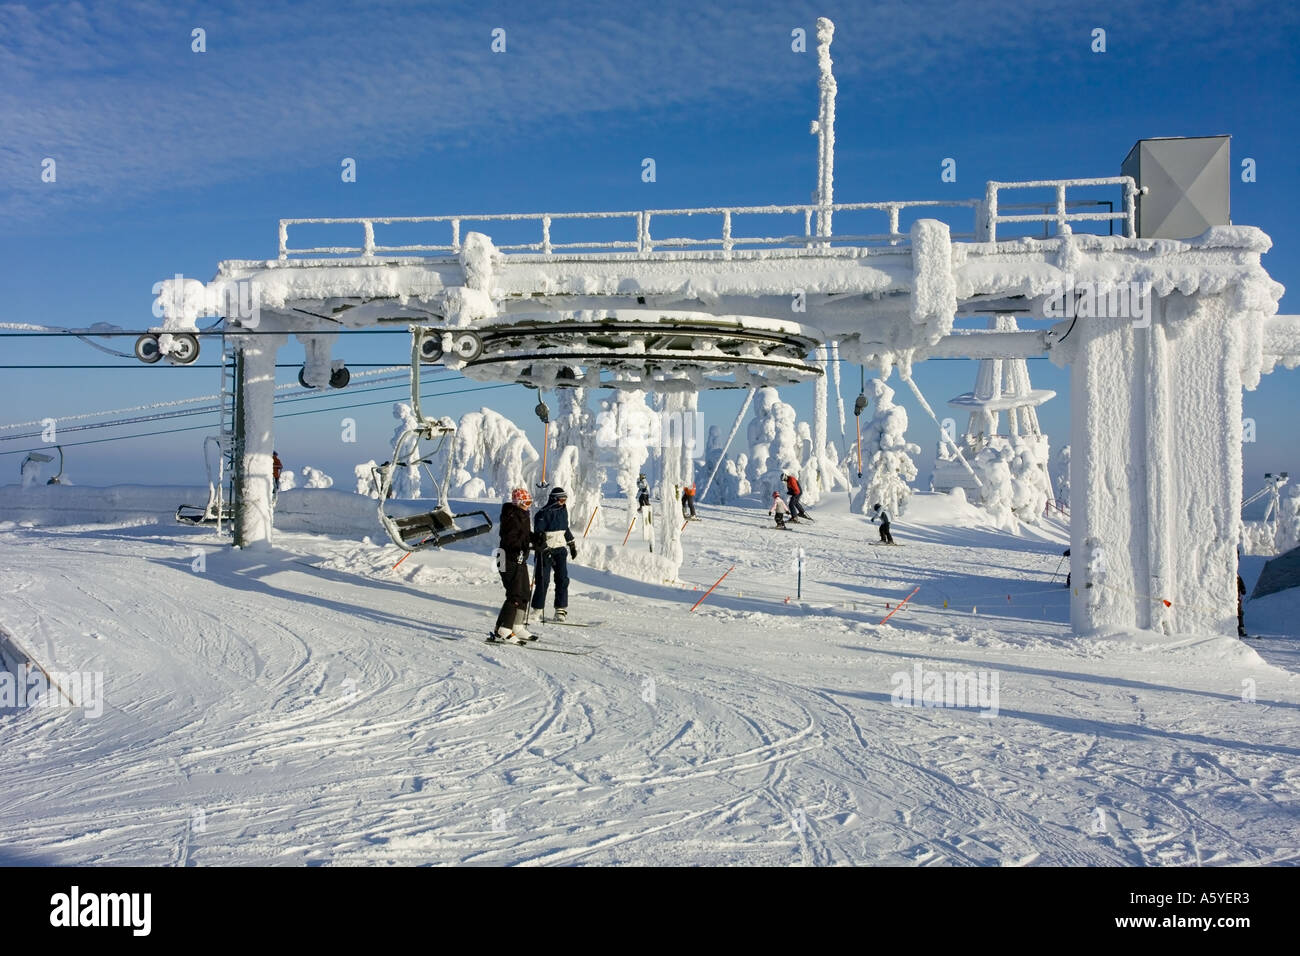 skilift at the Vuokatti ski resort, Finland Stock Photo